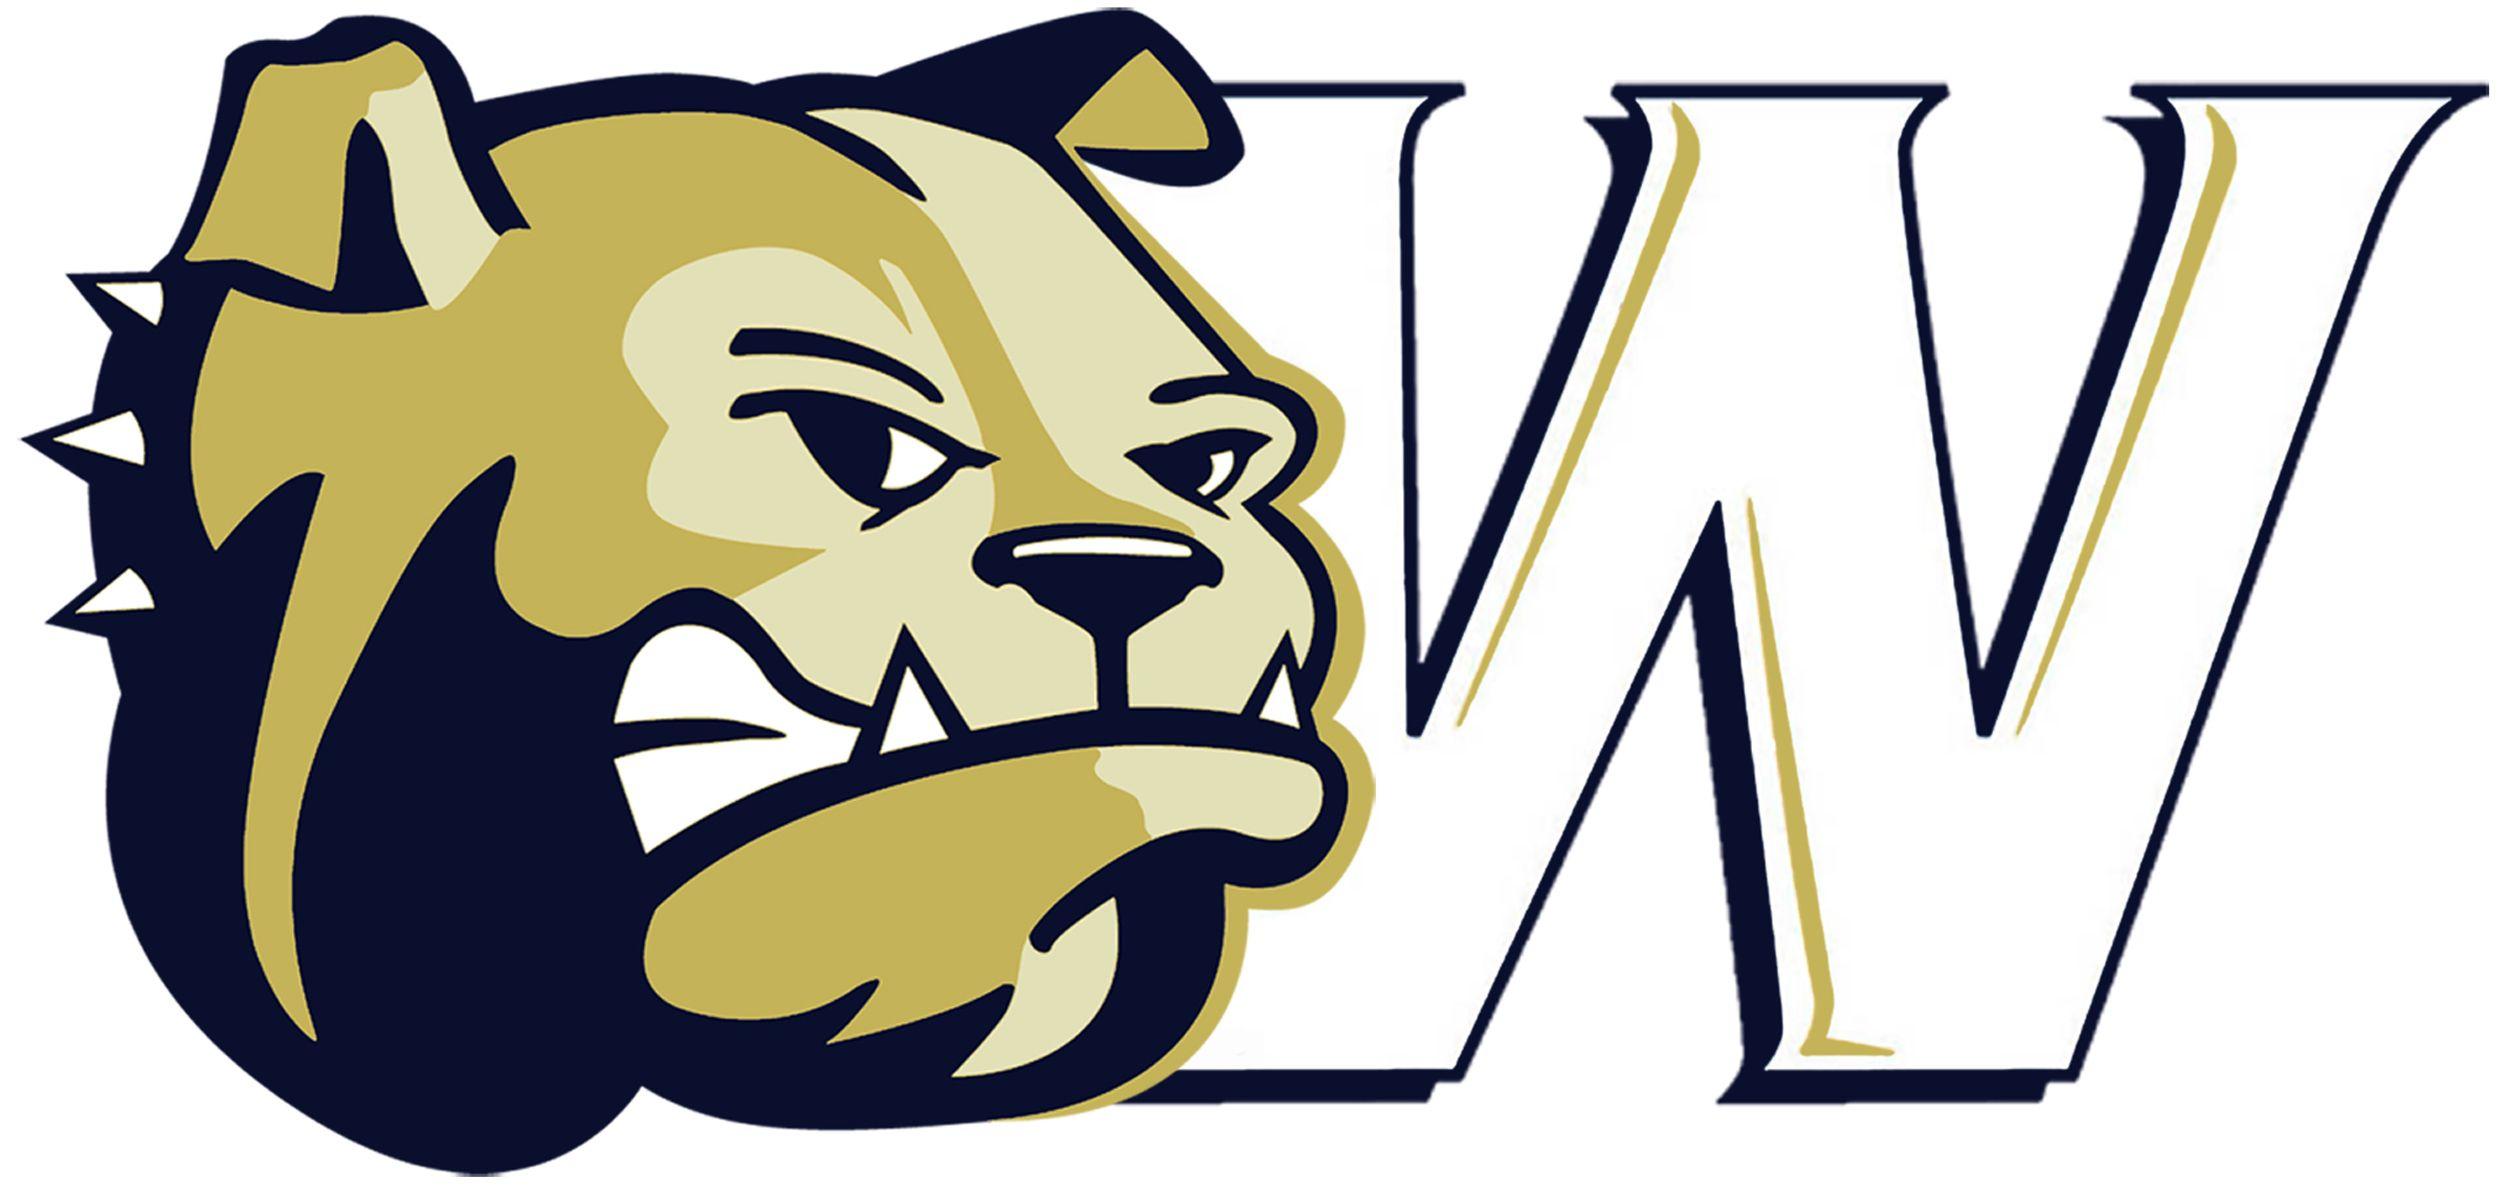 Wingate Logo - Athletic Communications - Wingate University Athletics